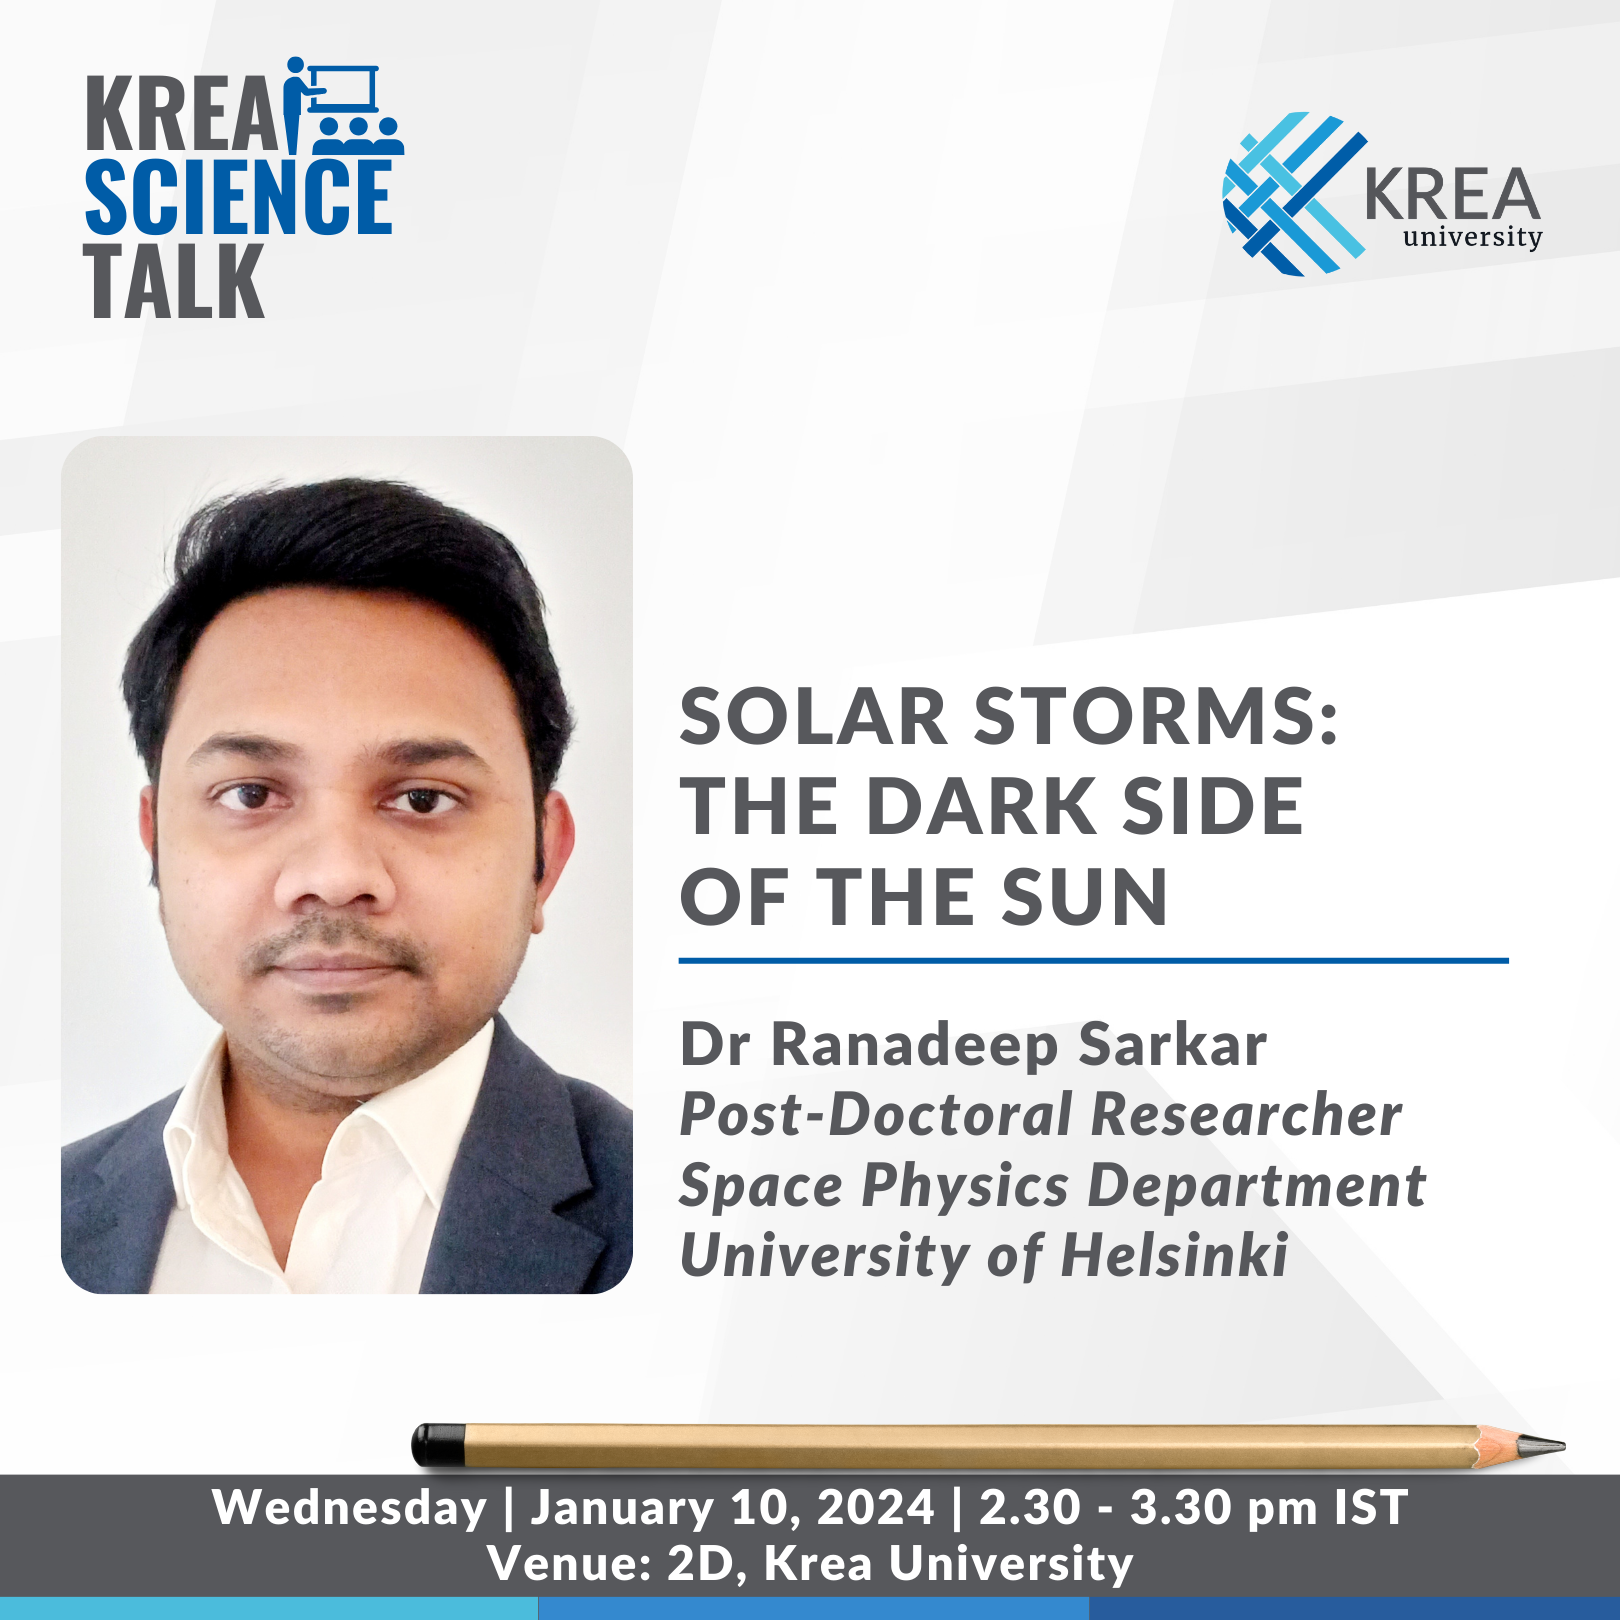 A Talk on Solar Storms: The Dark Side of the Sun by Dr Ranadeep Sarkar